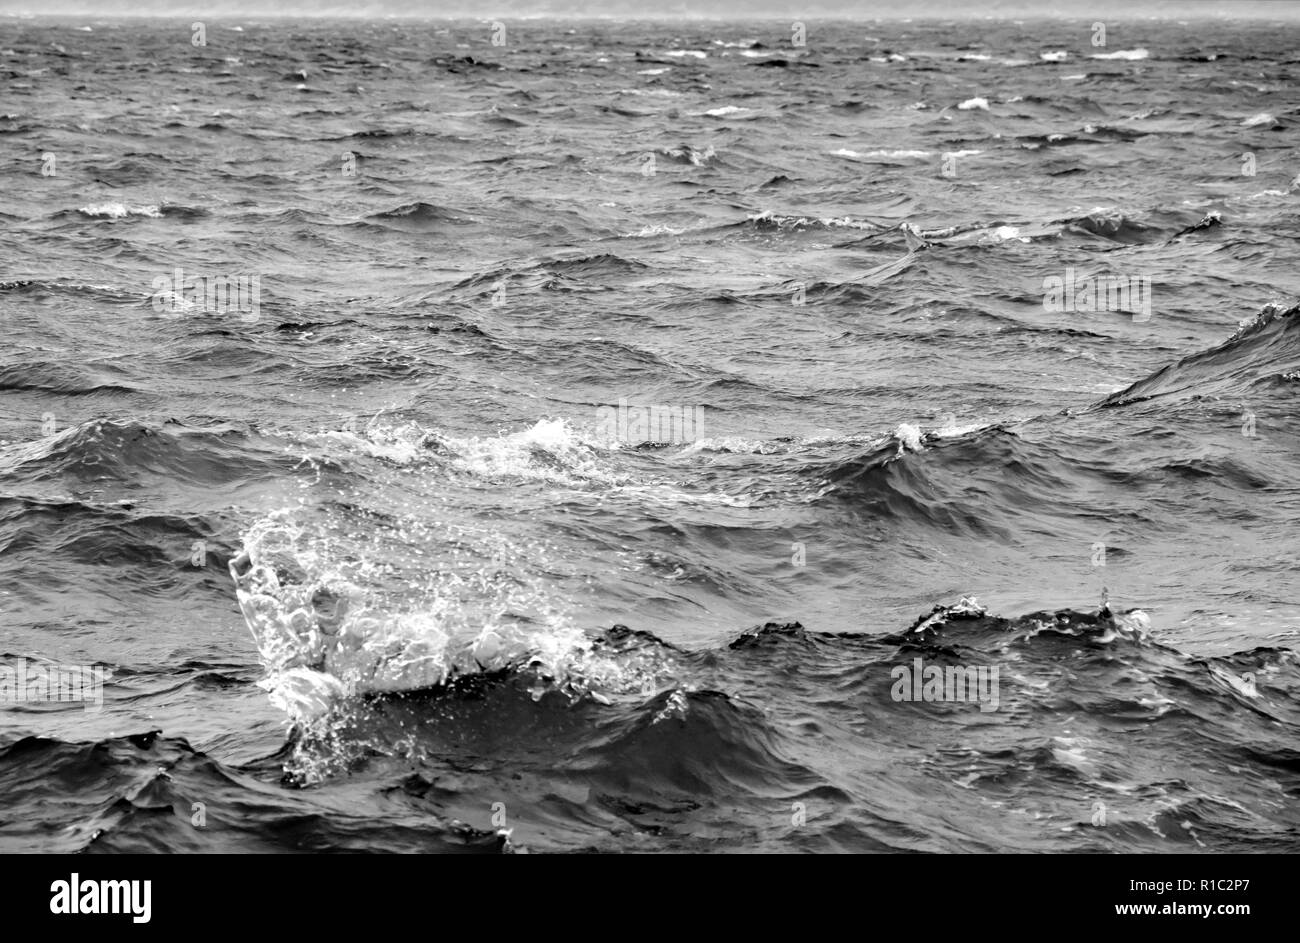 Stürmische See in Schwarz und Weiß Stockfoto